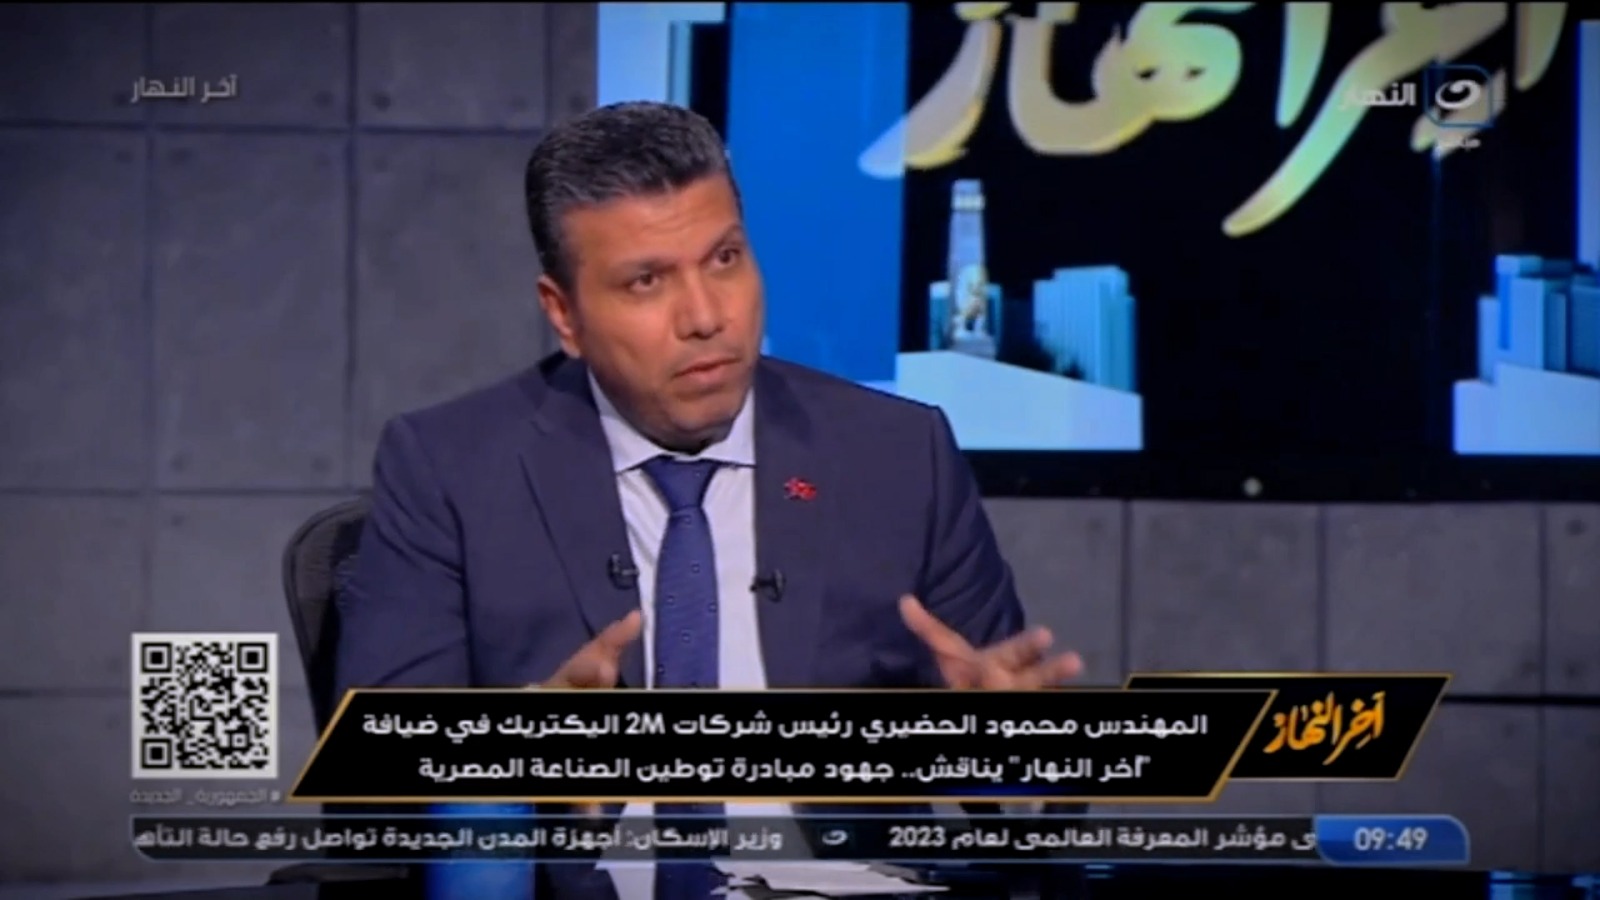 Eng. Mahmoud Al-Hadiri, CEO of 2M